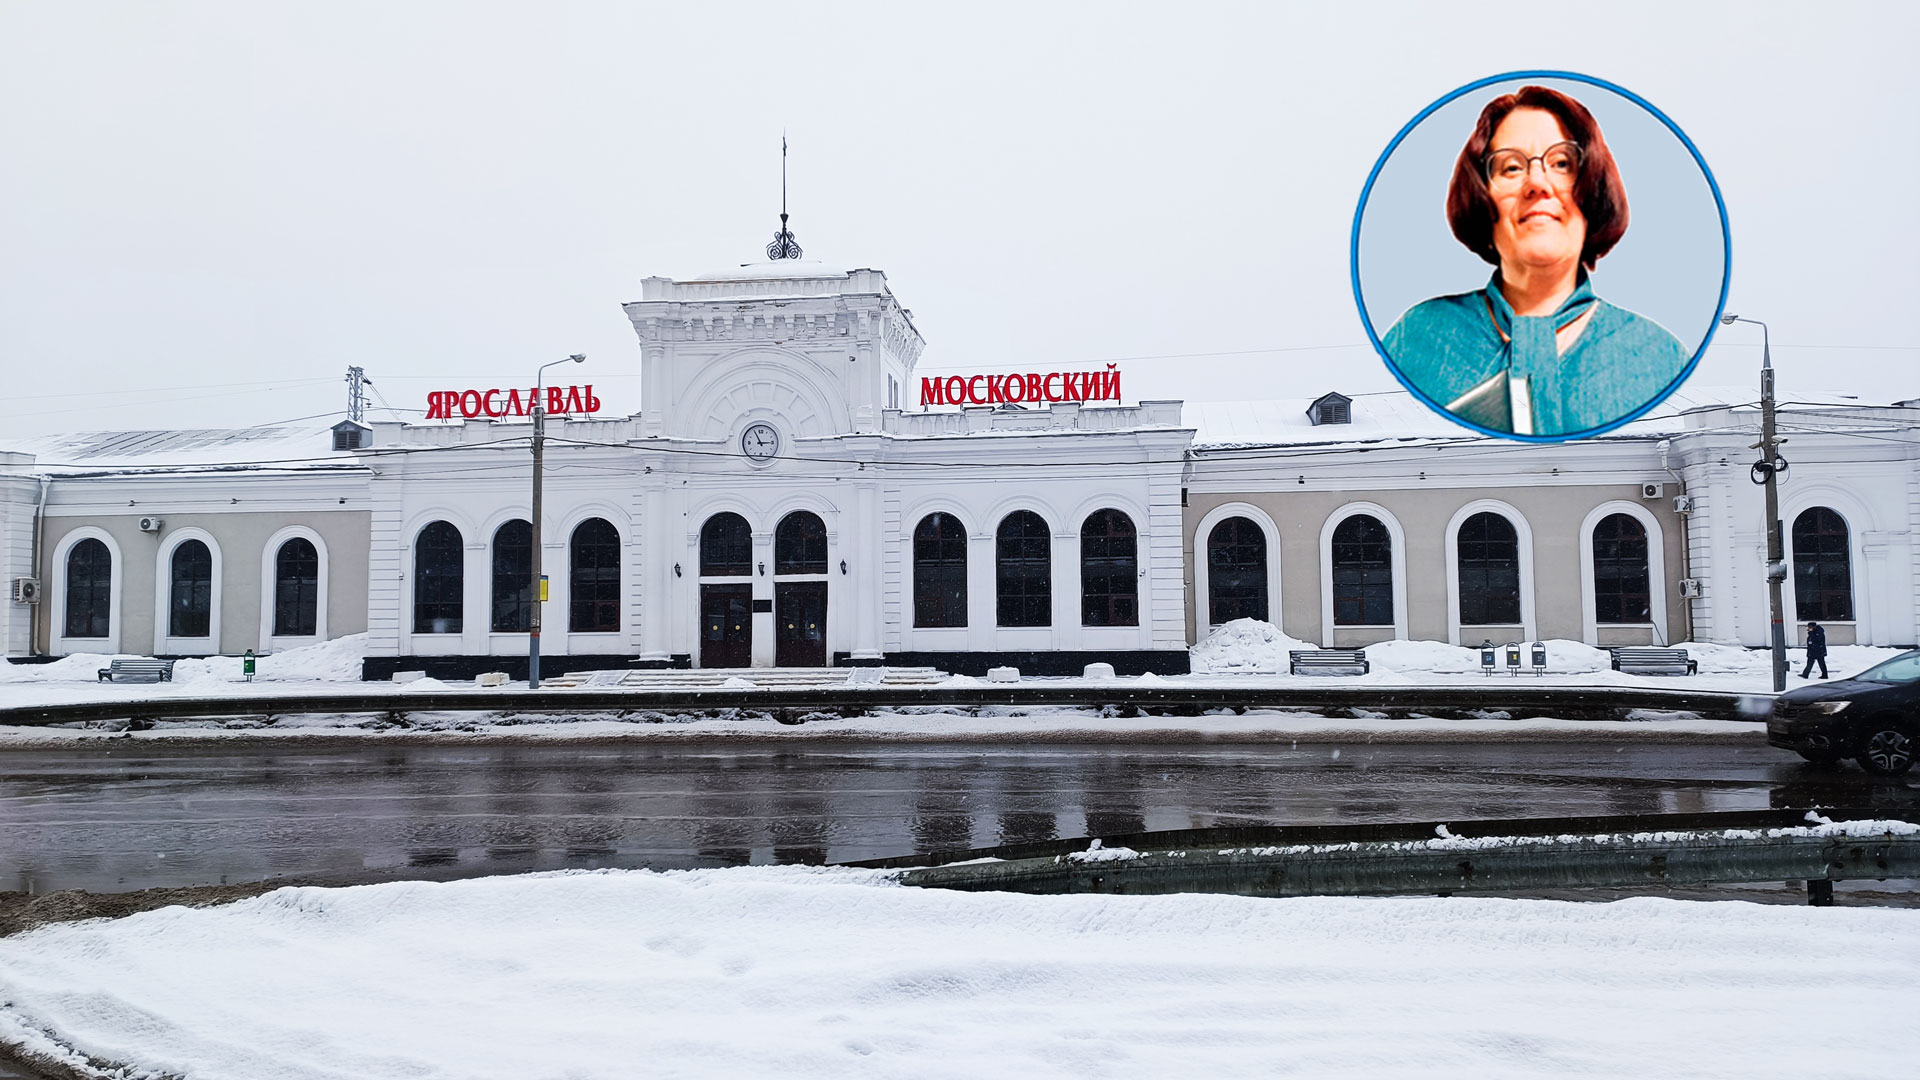 Московский вокзал Ярославль: информация про расписание, билеты и услуги.